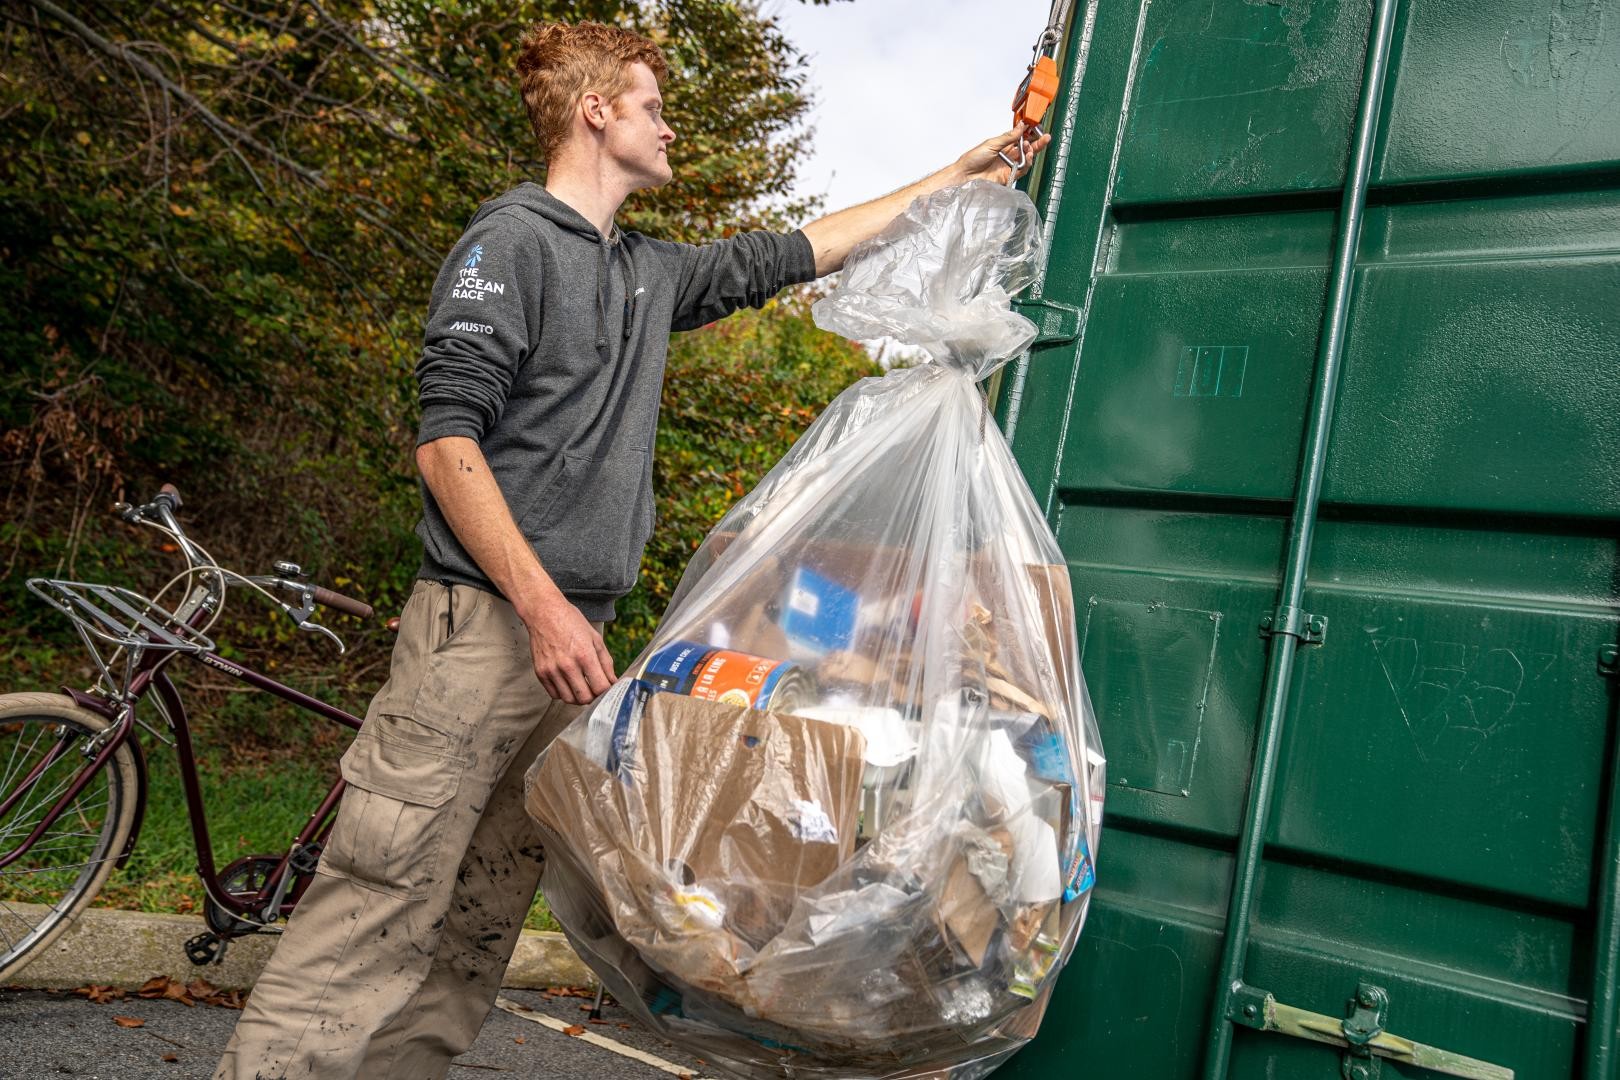 Cullen Zelenka a sustainability intern in Newport, Rhode Island weighs waste before recycling